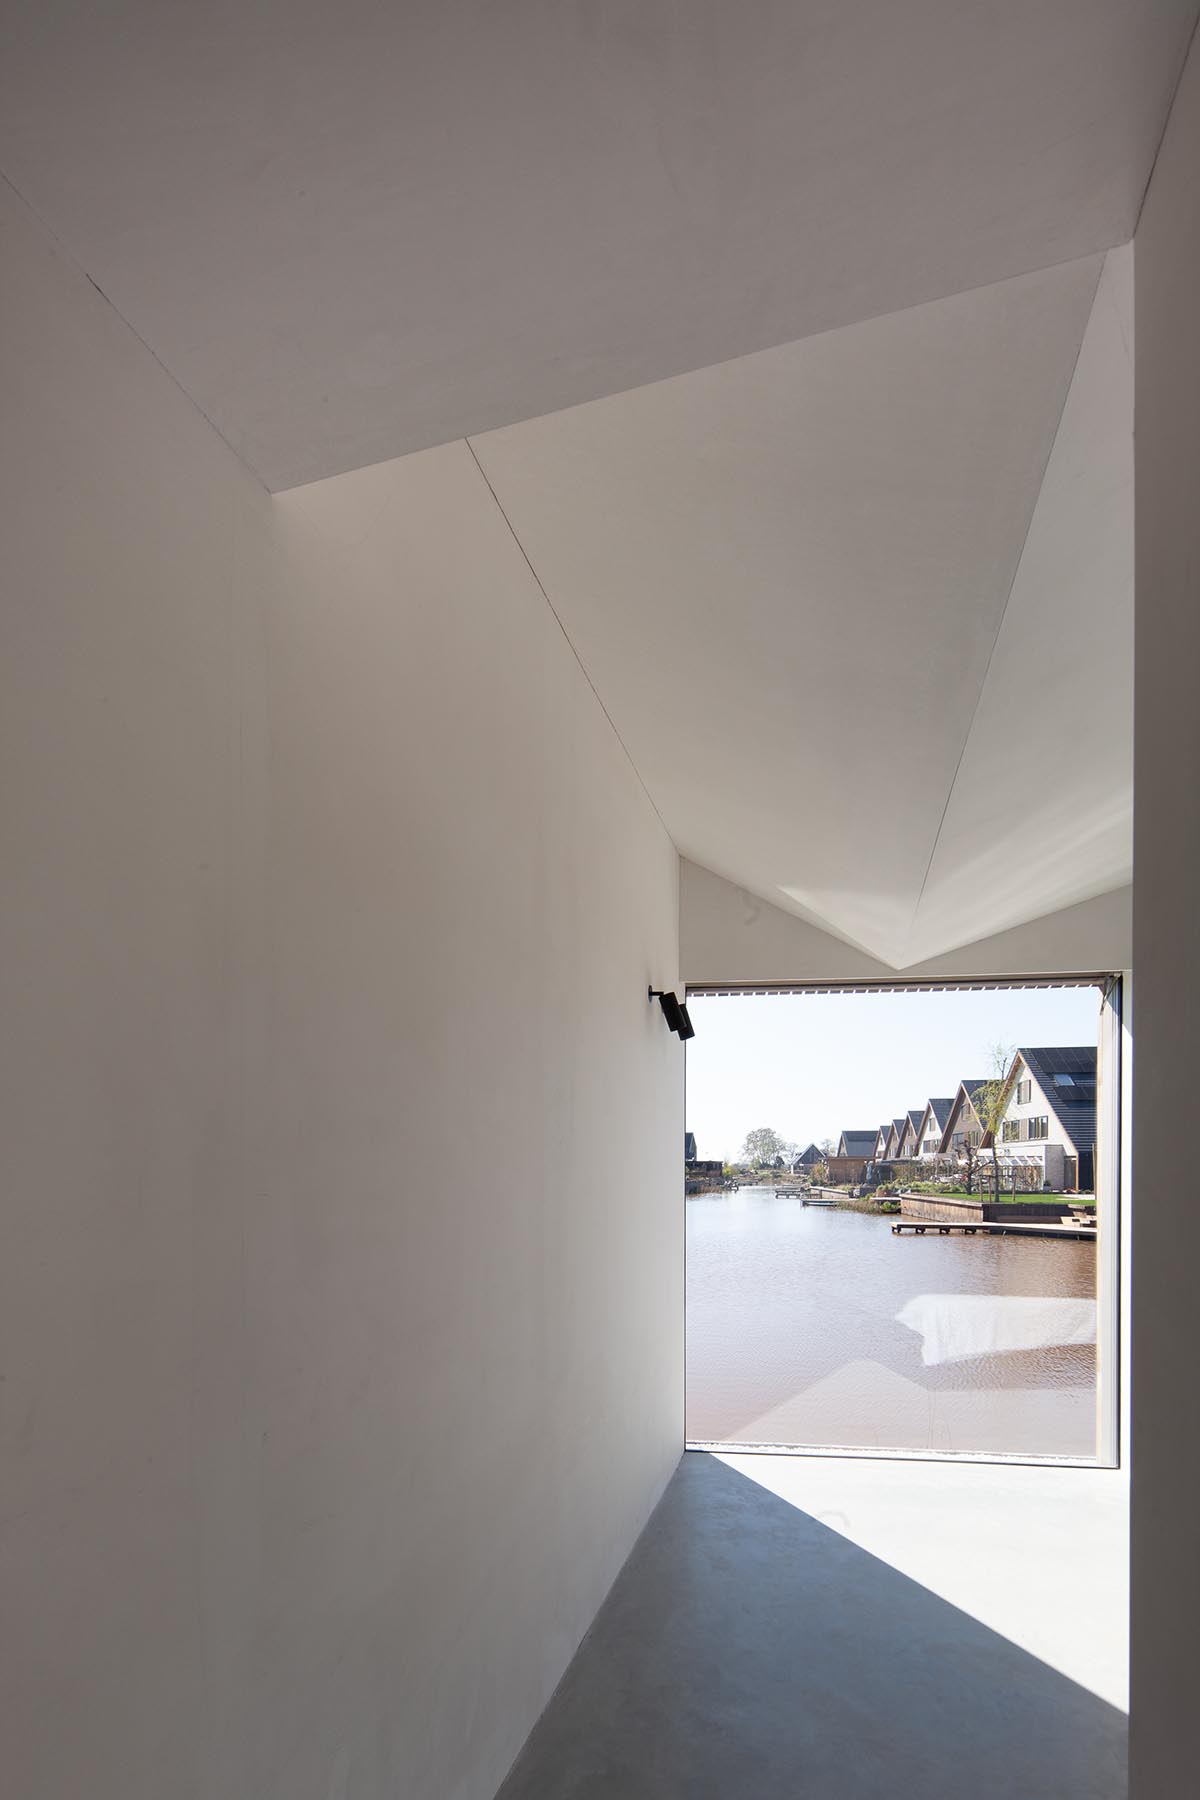 Francois Verhoeven Architects построили семейный дом с деревянным каркасом и наклонной крышей в Нидерландах. 